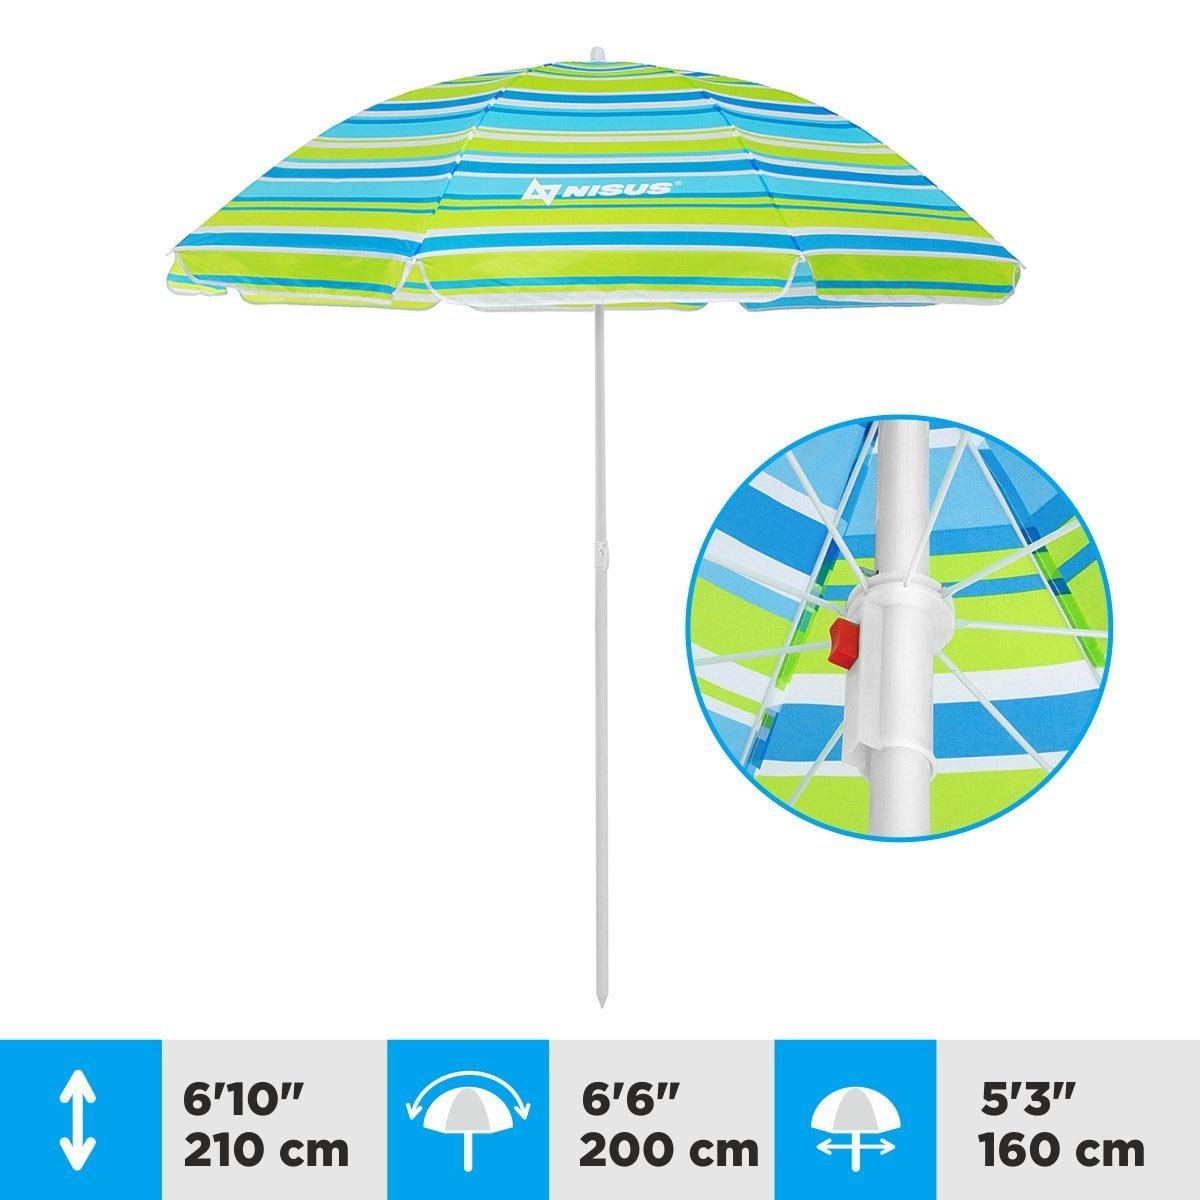 A 5.3 ft Bright Tilting Beach Umbrella is 6.1 feet high